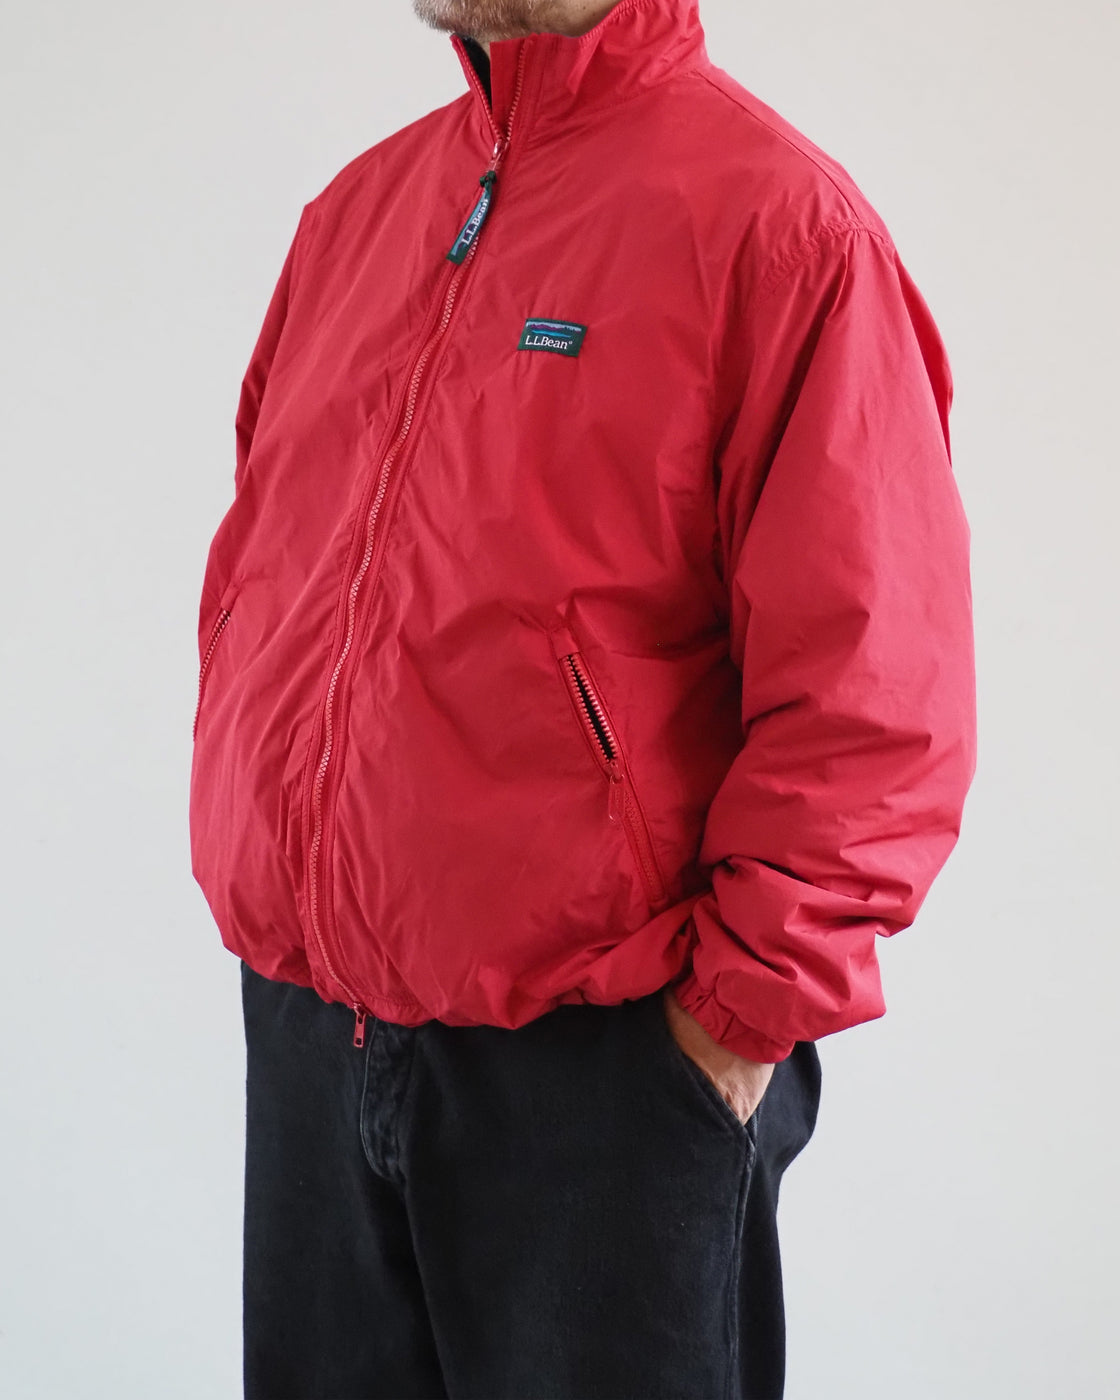 L.L.Bean Lovell Microfleece Lined Jacket,Scarlet